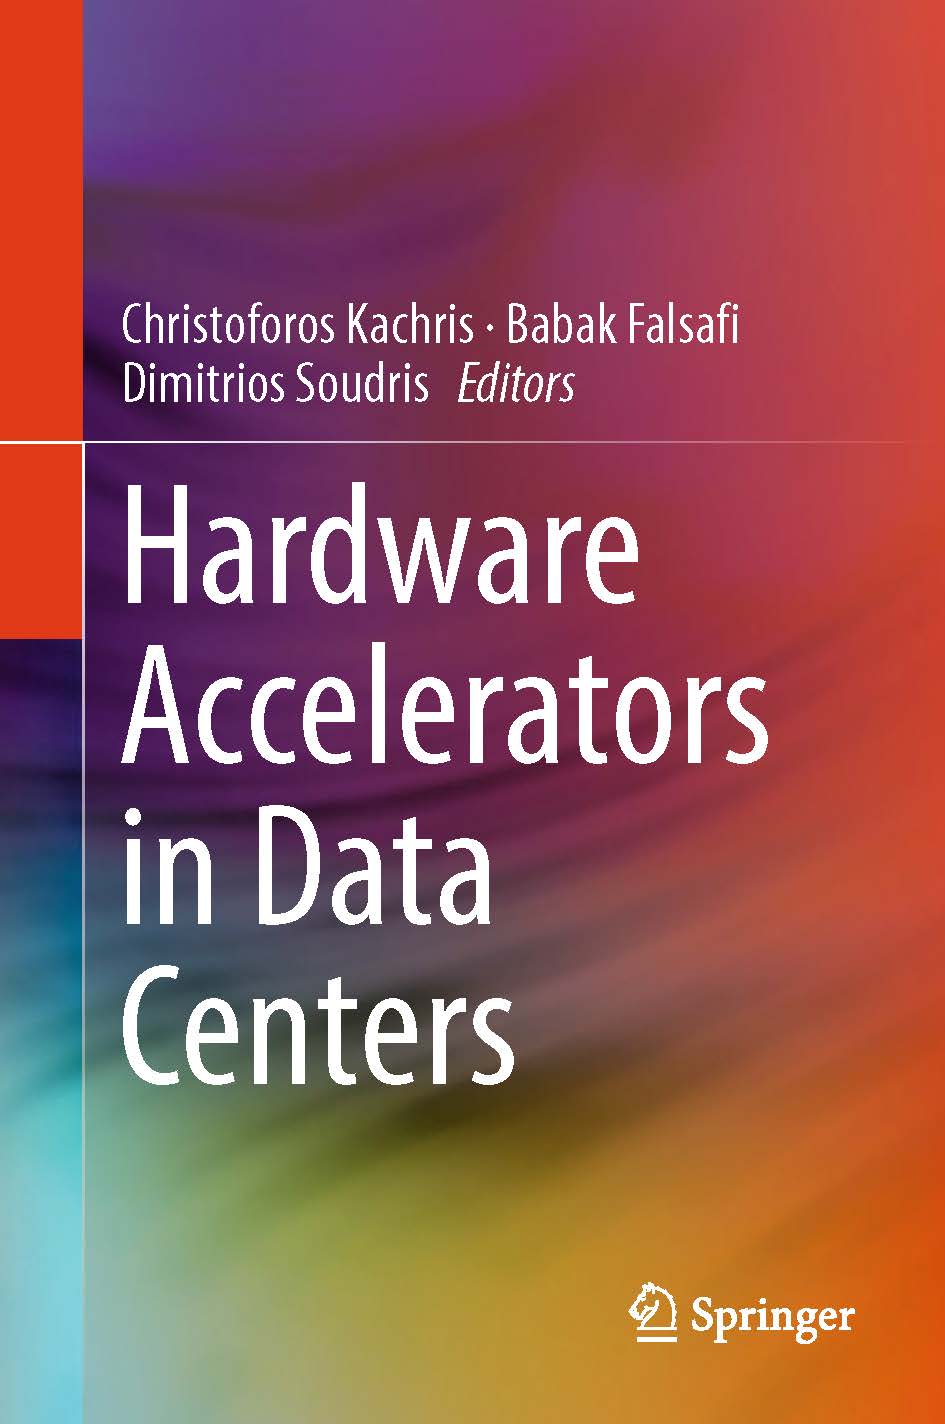 页面提取自－2019_Book_Hardware Accelerators in Data Centers.jpg